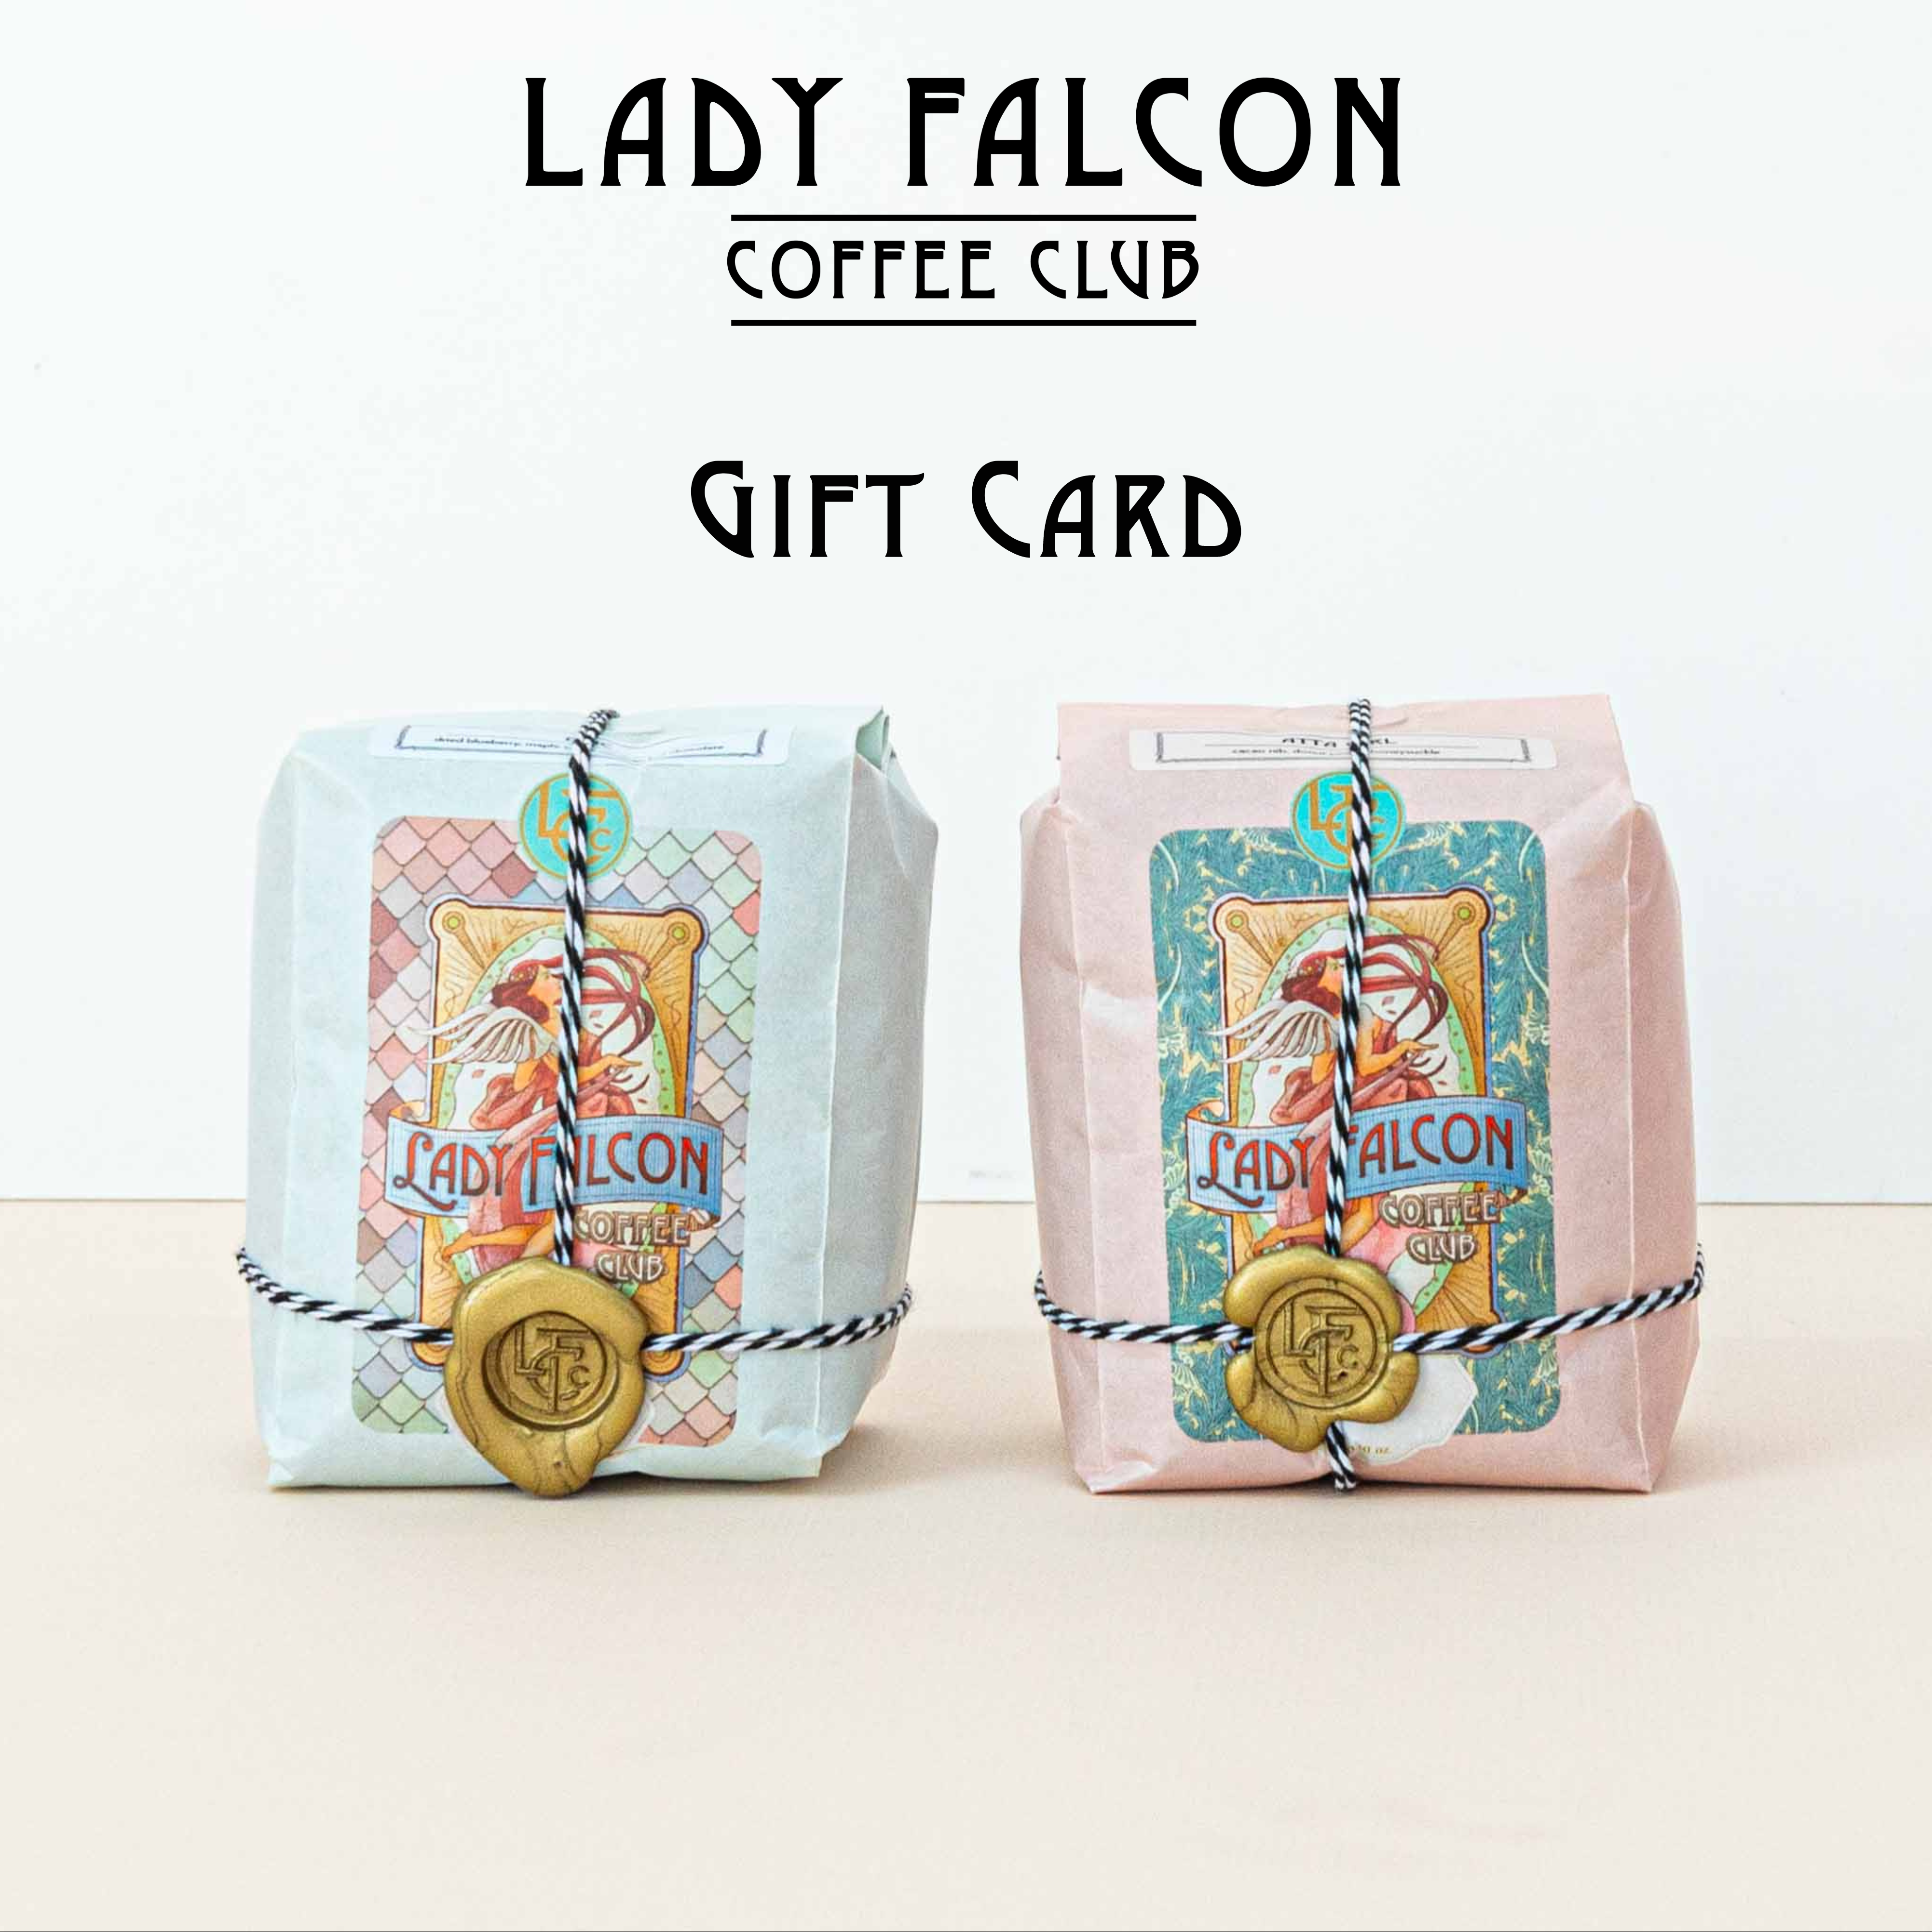 Lady Falcon Coffee Club Gift Card